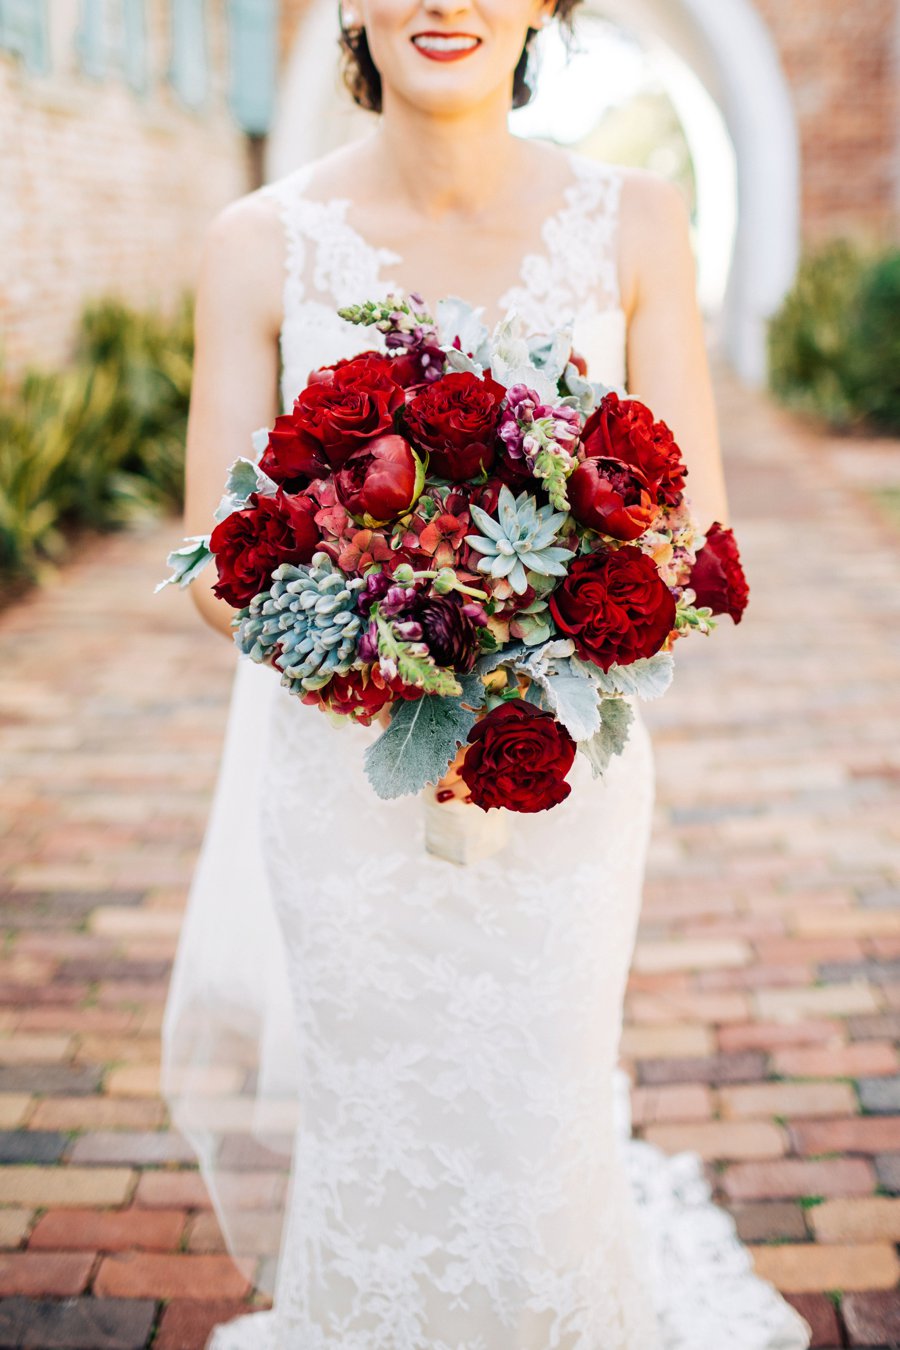 An Elegant Deep Red and Blue Central Florida Wedding via TheELD.com